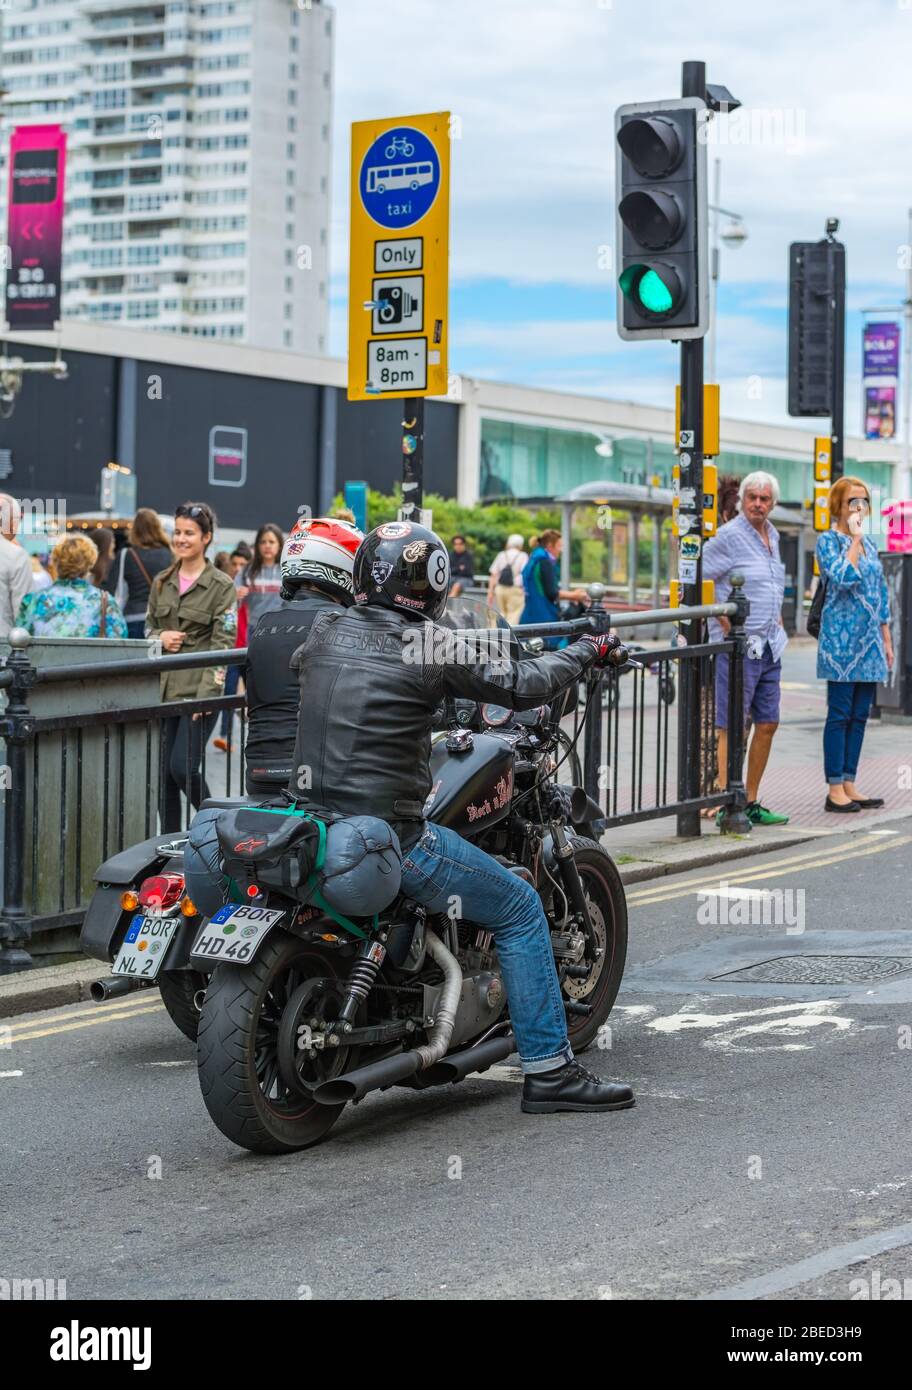 Paar ausländische Motorradfahrer wahrscheinlich aus Deutschland mit deutschen Kennzeichen, an Ampeln in England, Großbritannien. Stockfoto